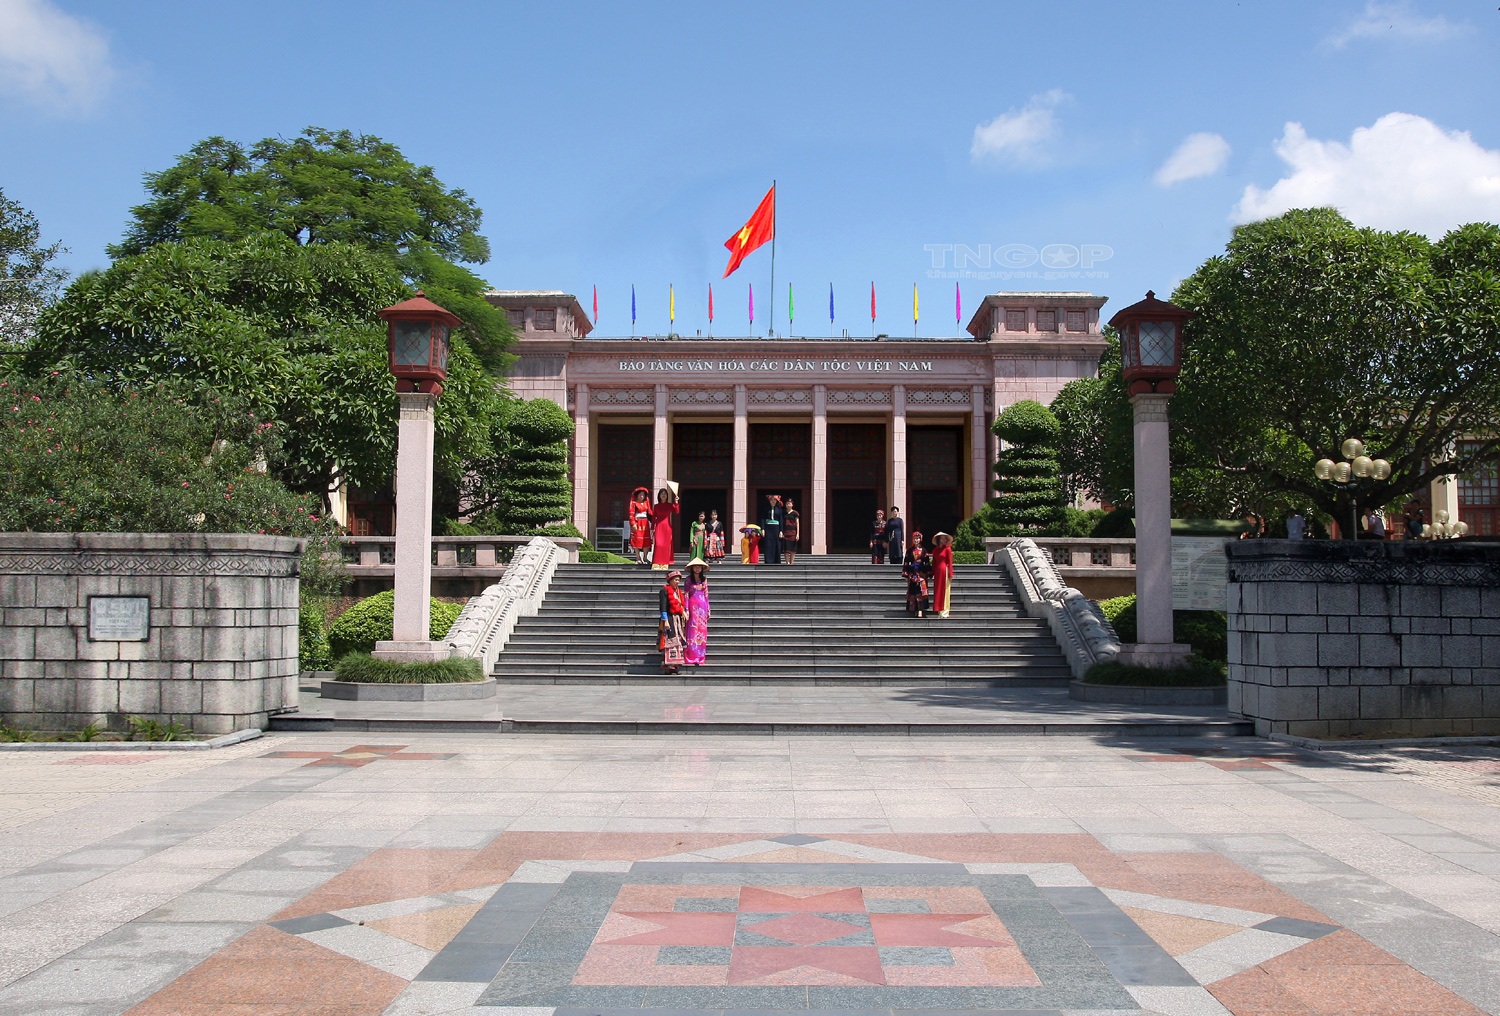 Nơi lưu giữ giá trị văn hóa các dân tộc Việt Nam - Ảnh 1.